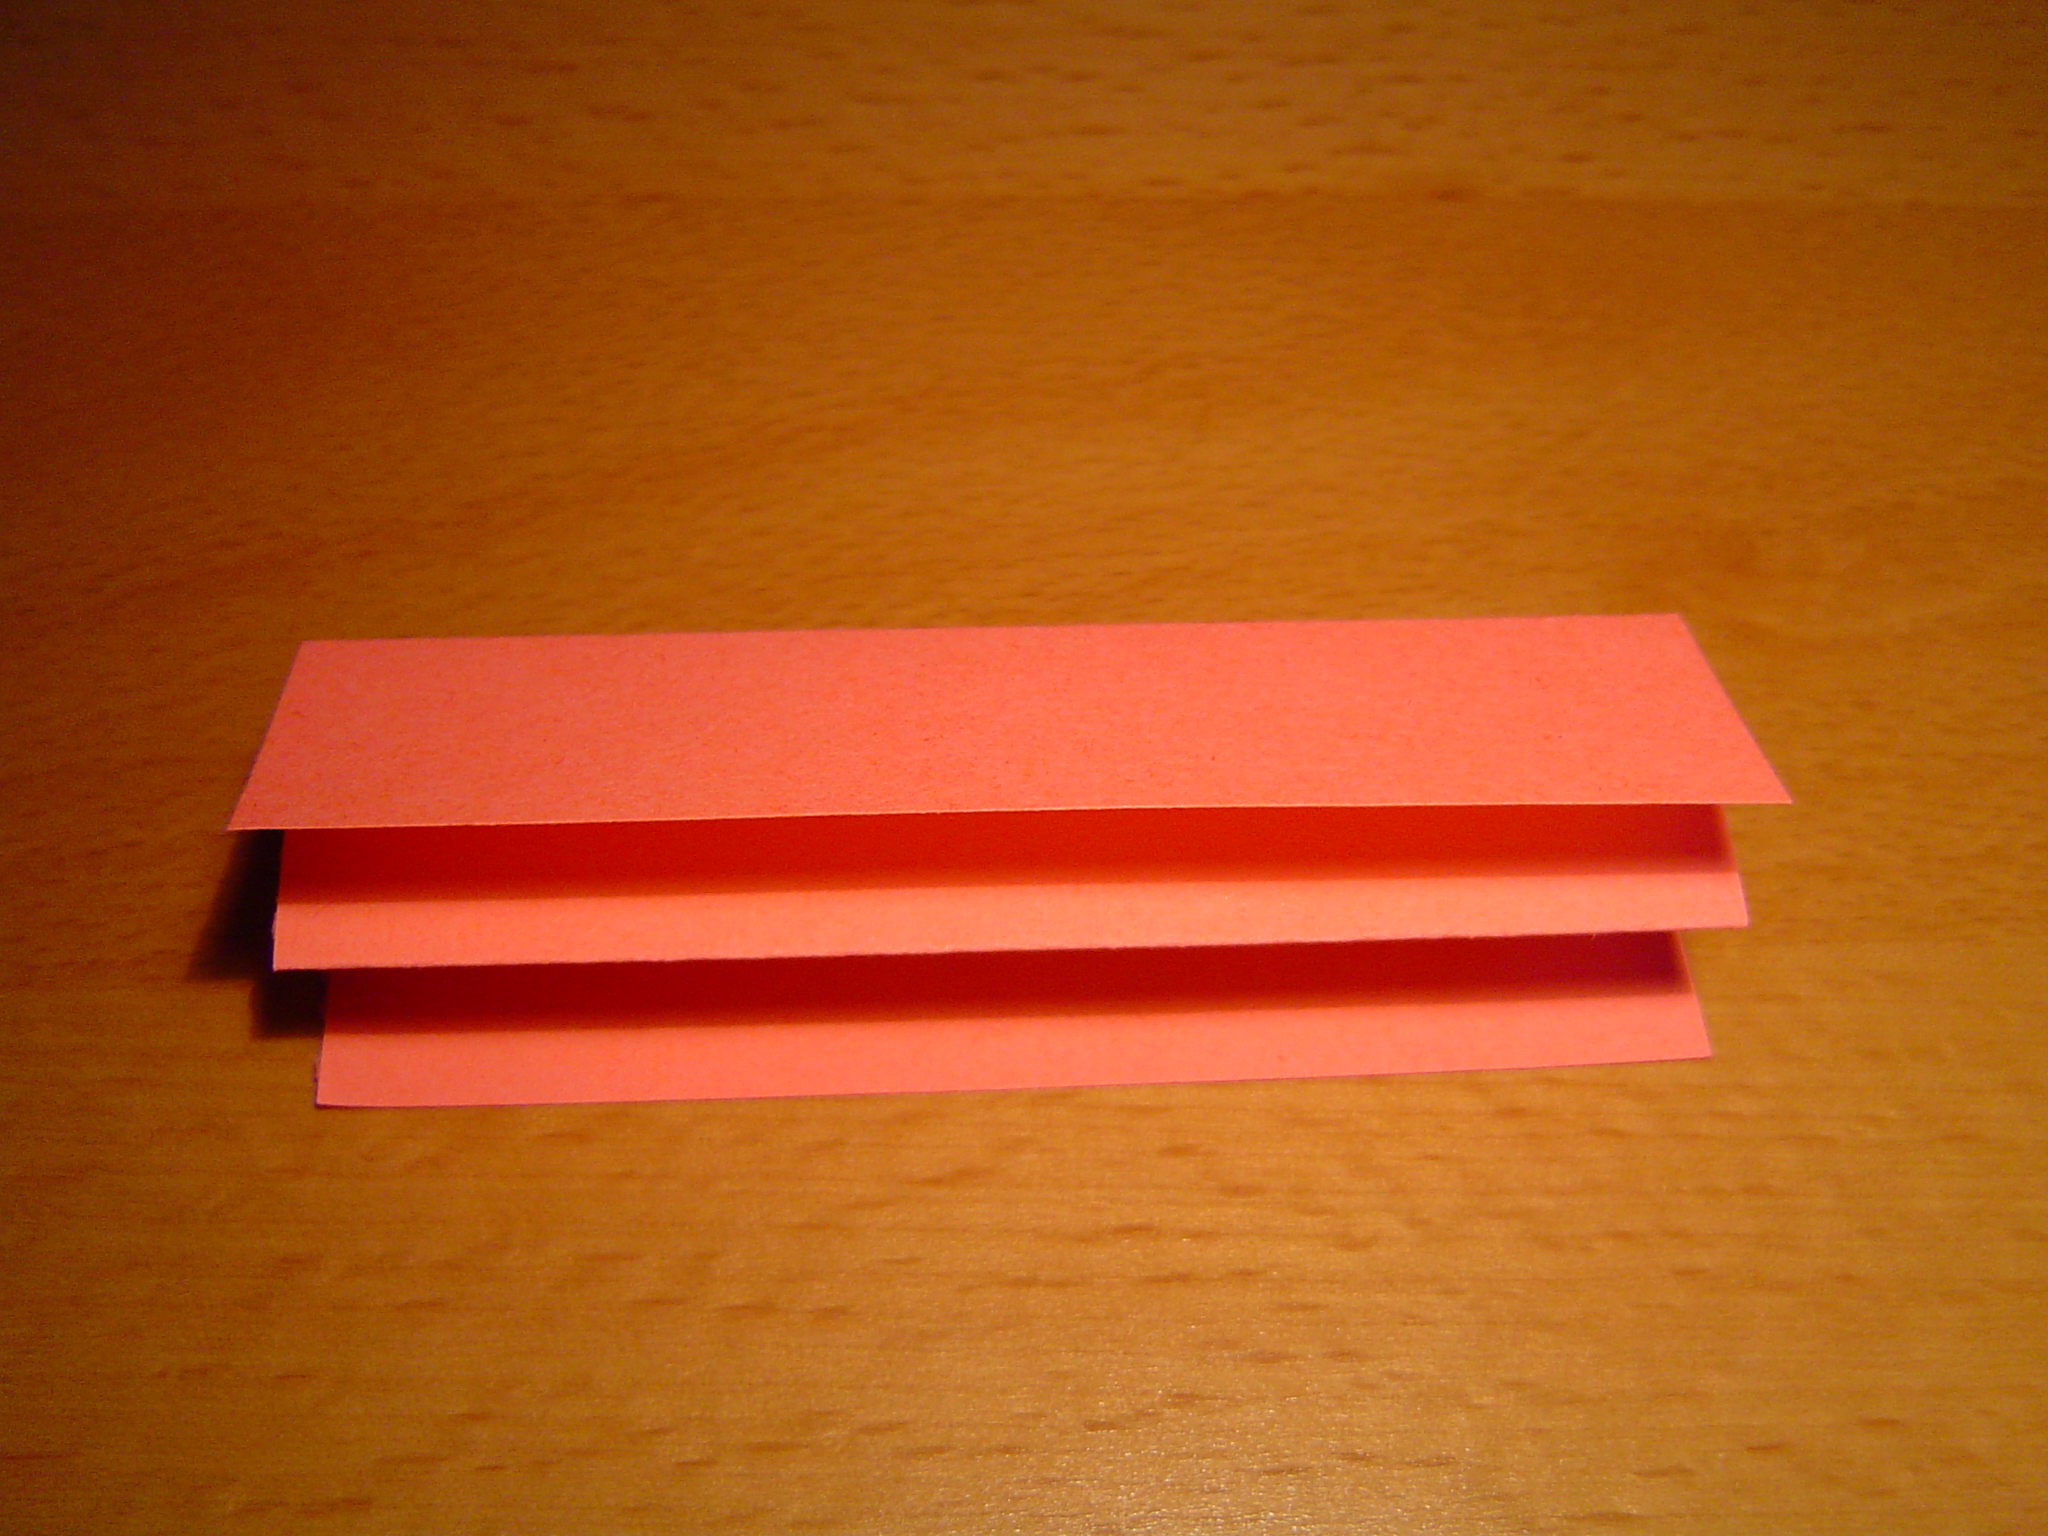 How About Orange: Make origami mini paper books